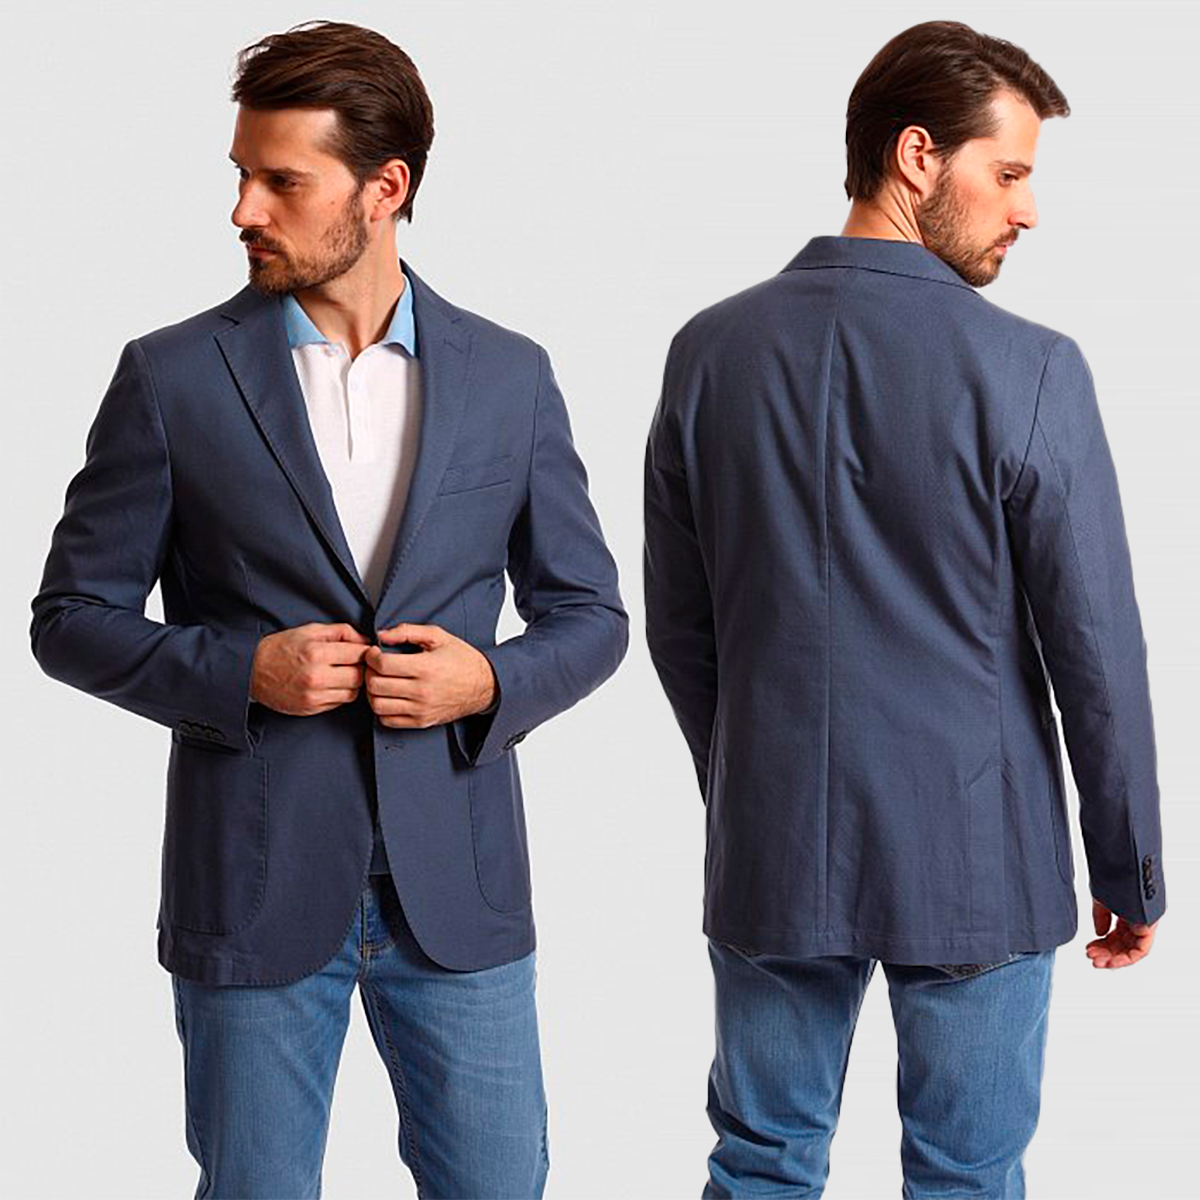 Длина пиджака мужского костюма: требования к длине, способы проверки подходящей длины